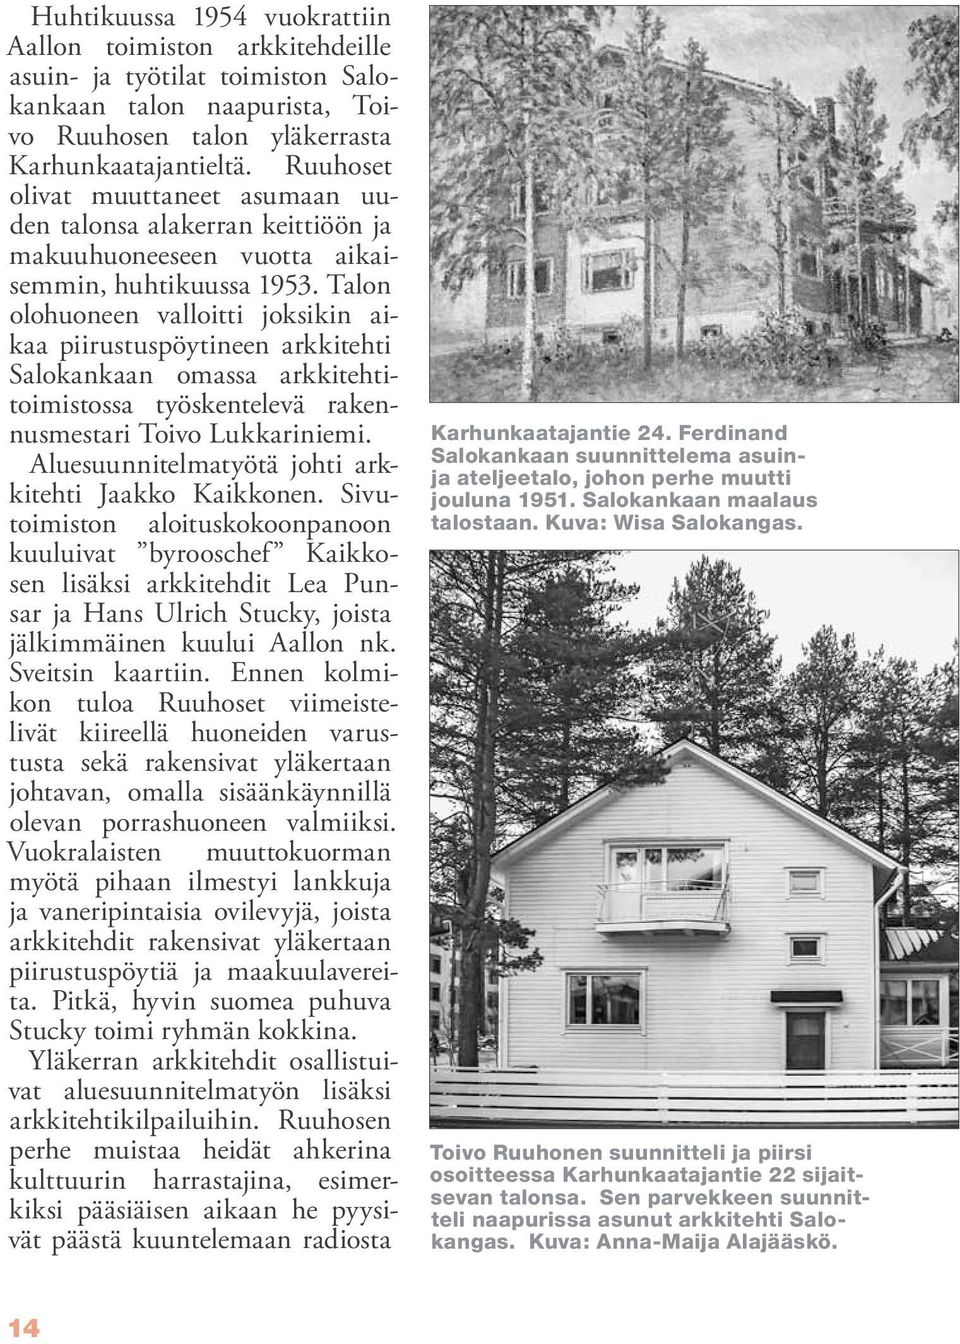 Talon olohuoneen valloitti joksikin aikaa piirustuspöytineen arkkitehti Salokankaan omassa arkkitehtitoimistossa työskentelevä rakennusmestari Toivo Lukkariniemi.